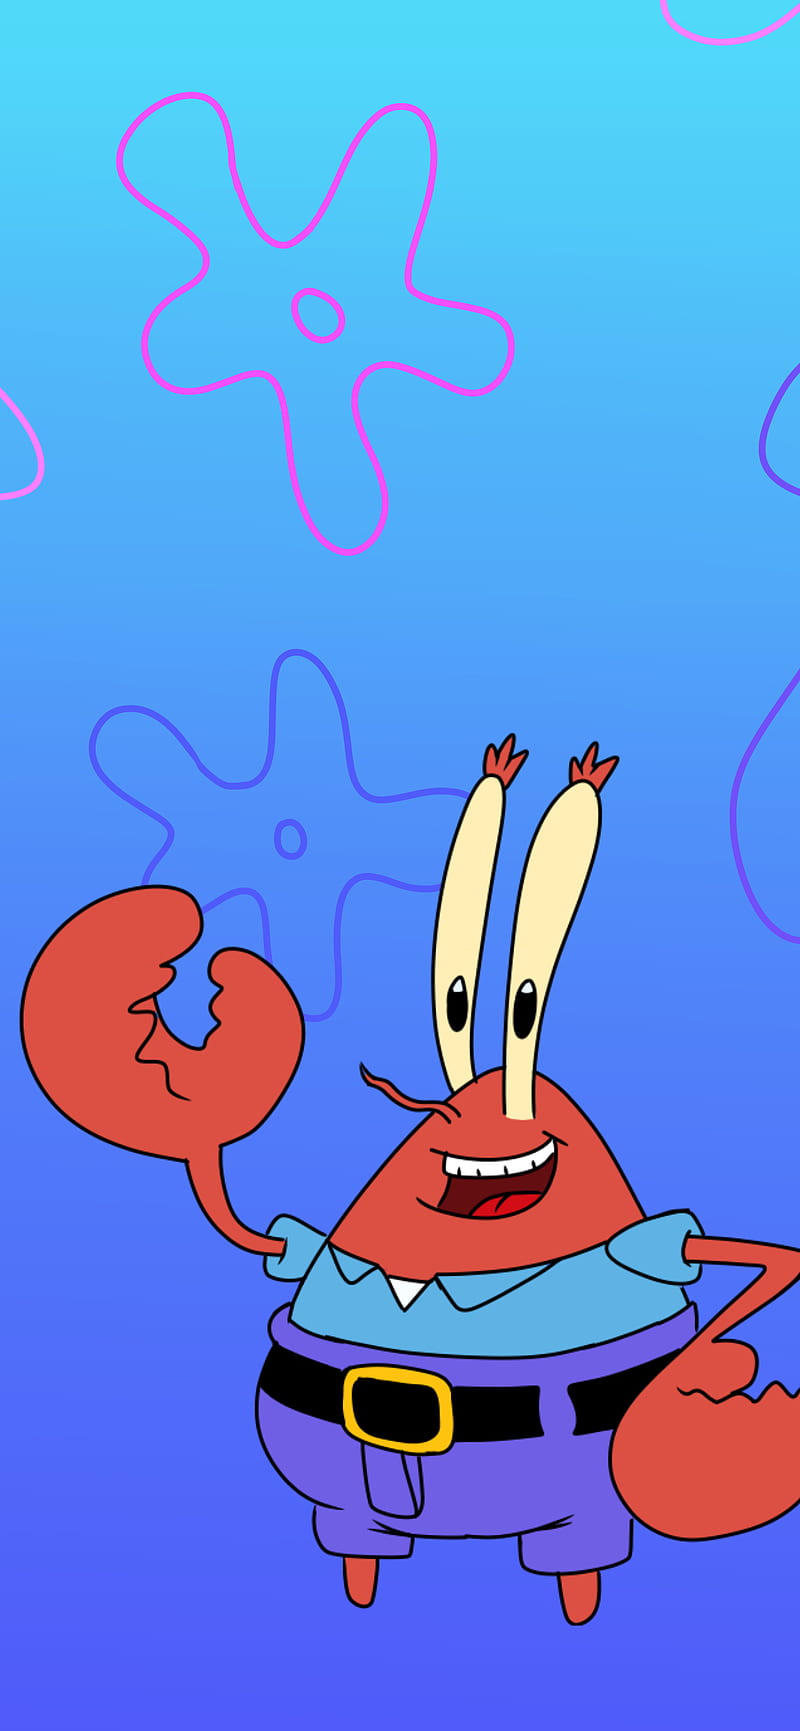 iPhone 12 Mr krab, cartoon, crab, iphone, spongebob, spongebob squarepants, HD phone wallpaper